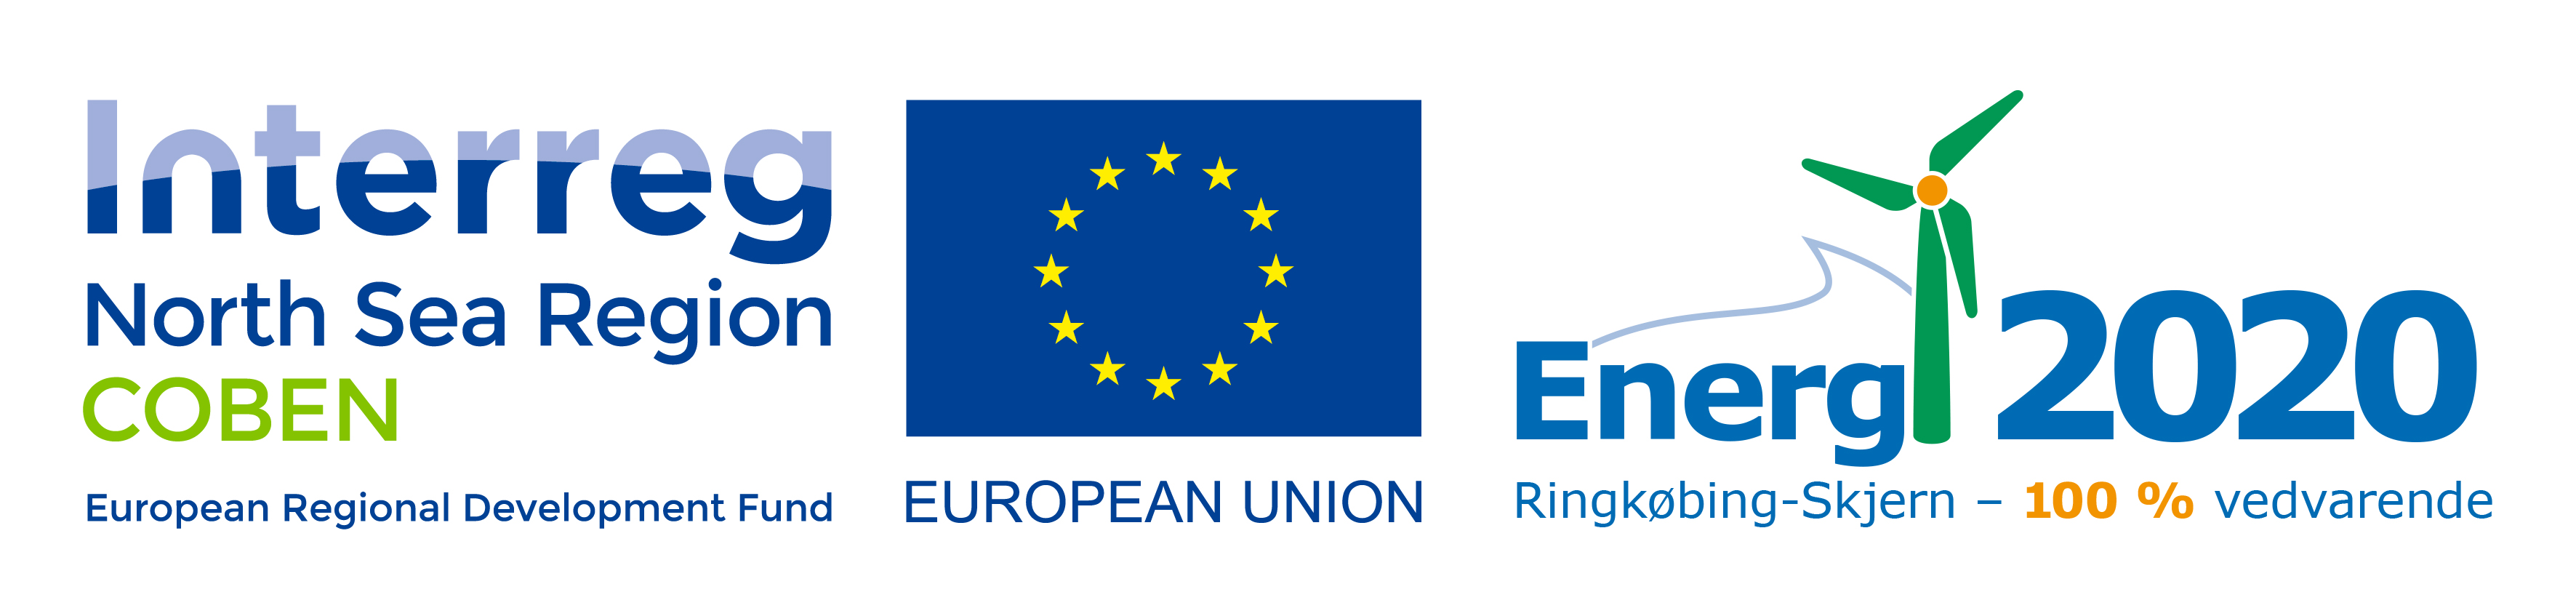 Billede som viser logoer for Interreg North Sea Region og Energi 2020